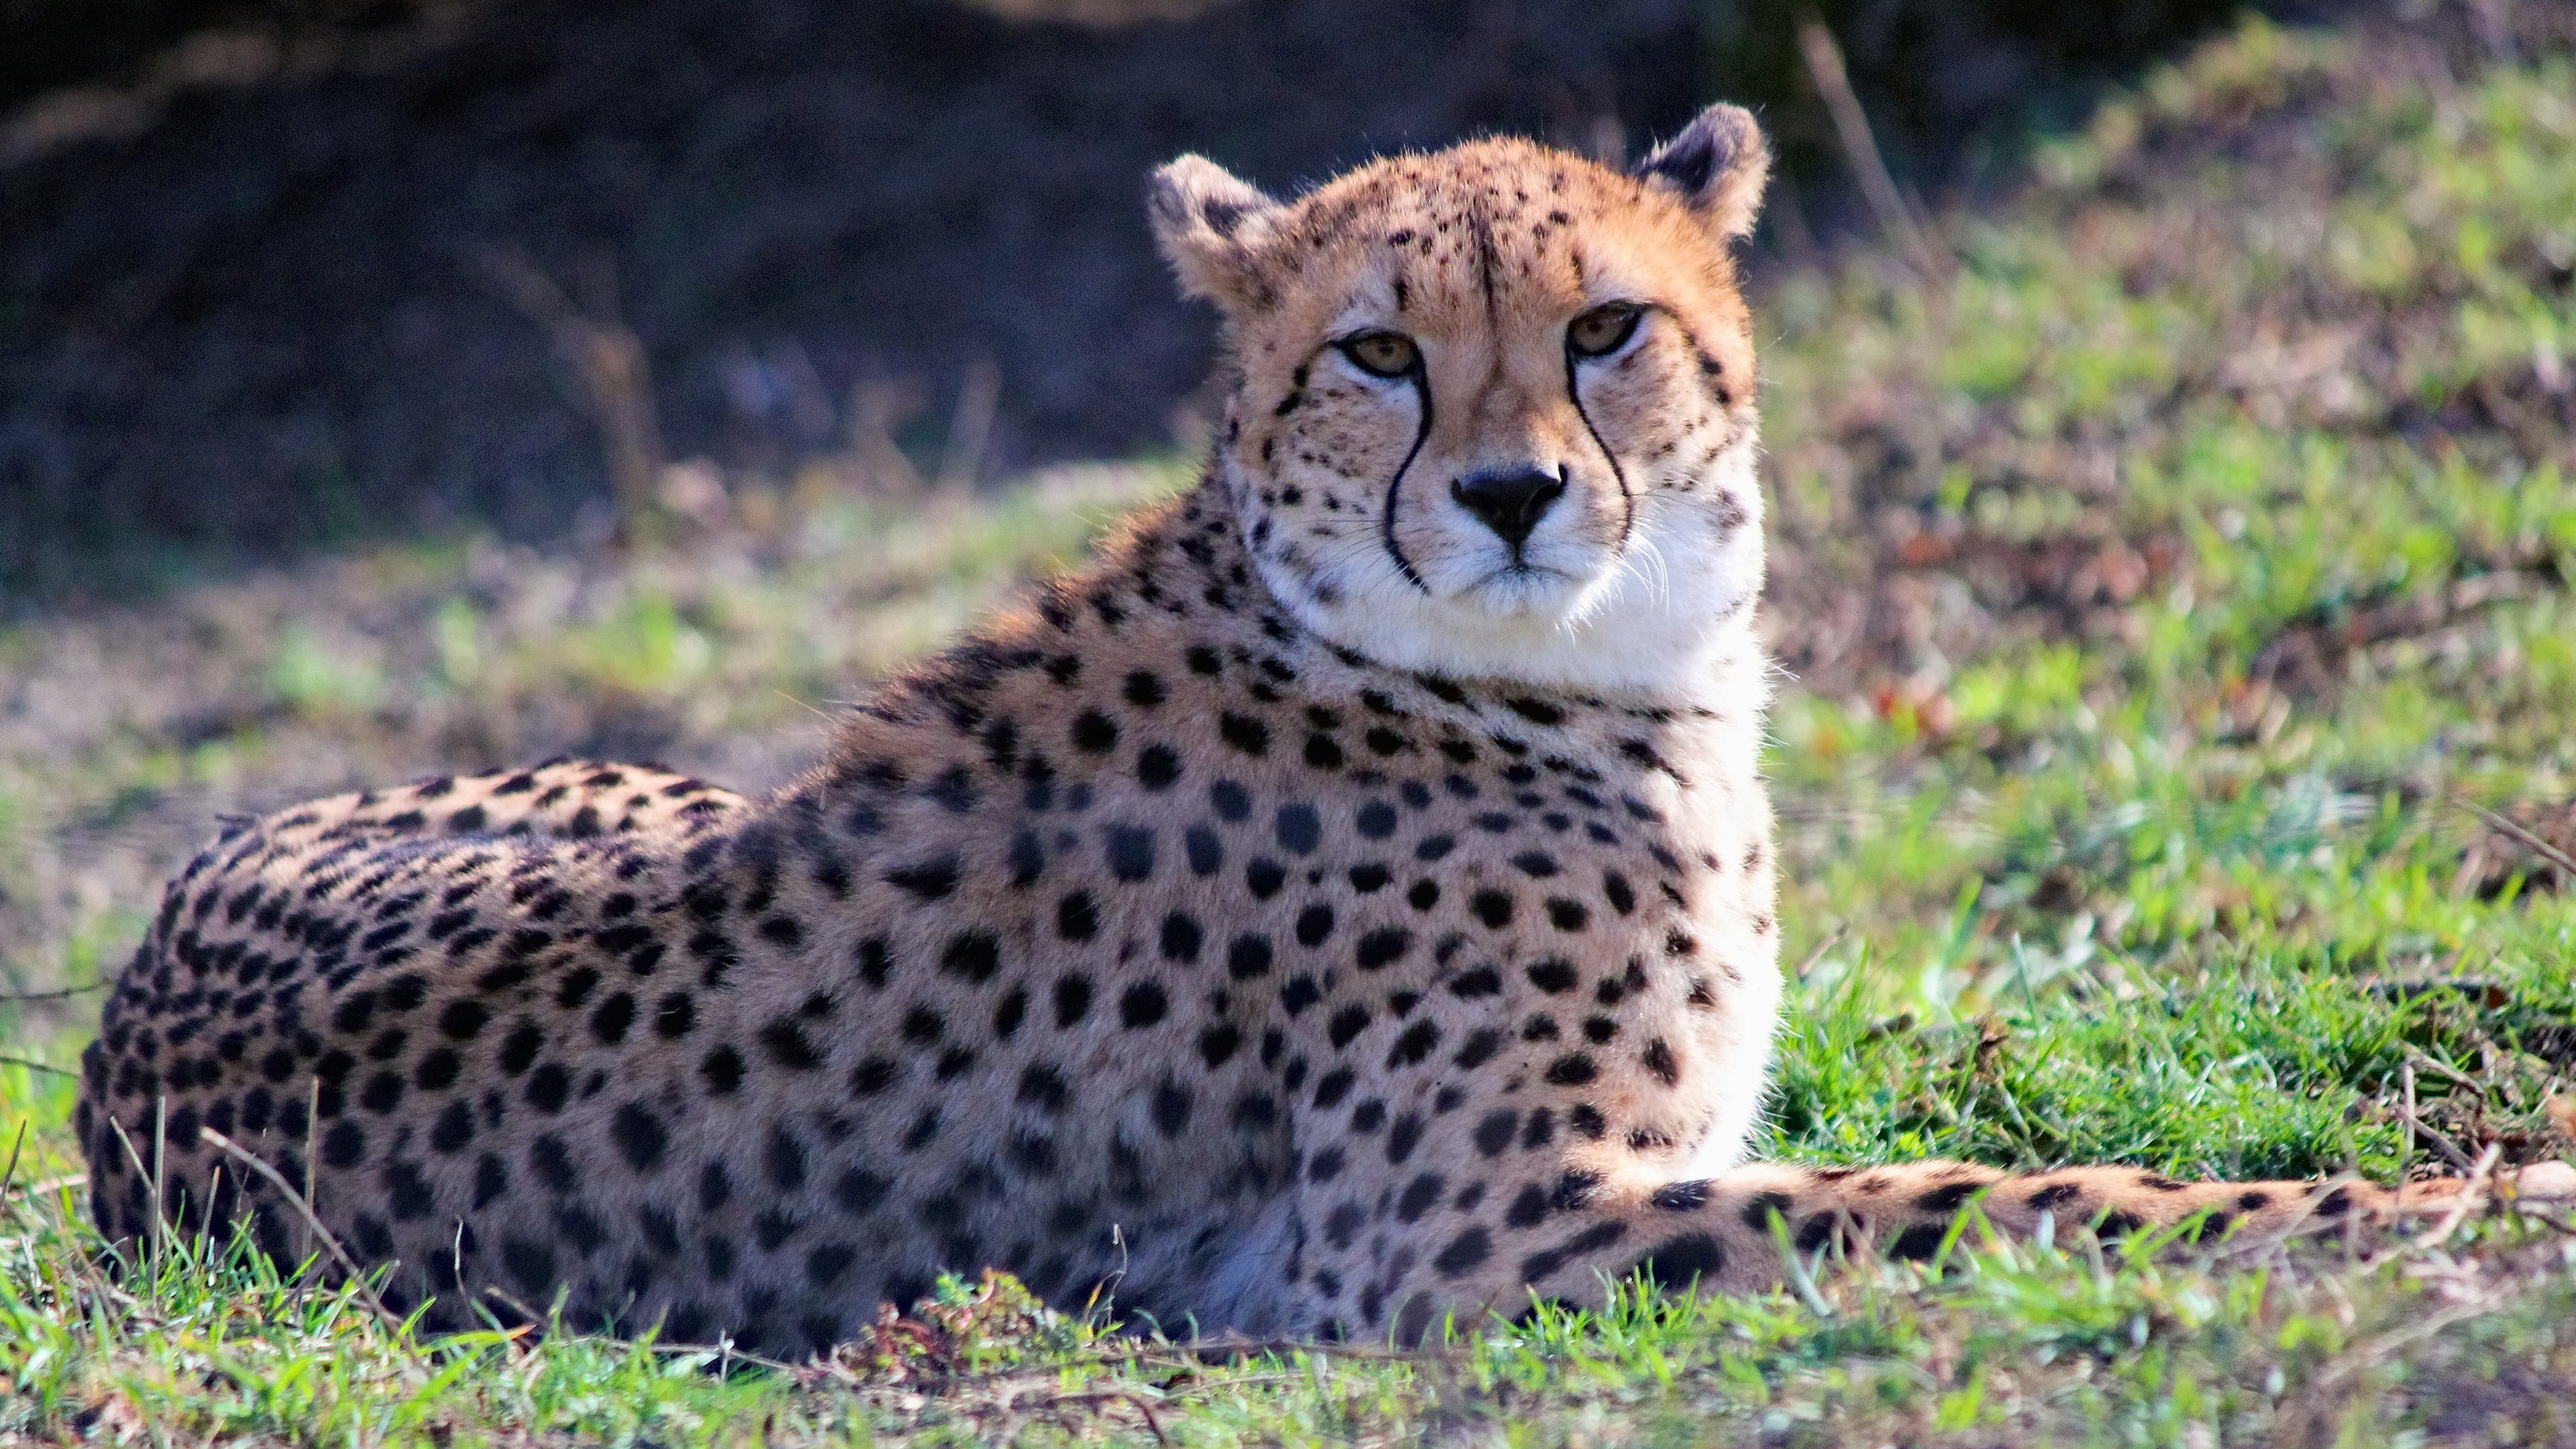 Sitting cheetah, Striking pose, Tranquil background, 4K resolution, 3840x2160 4K Desktop